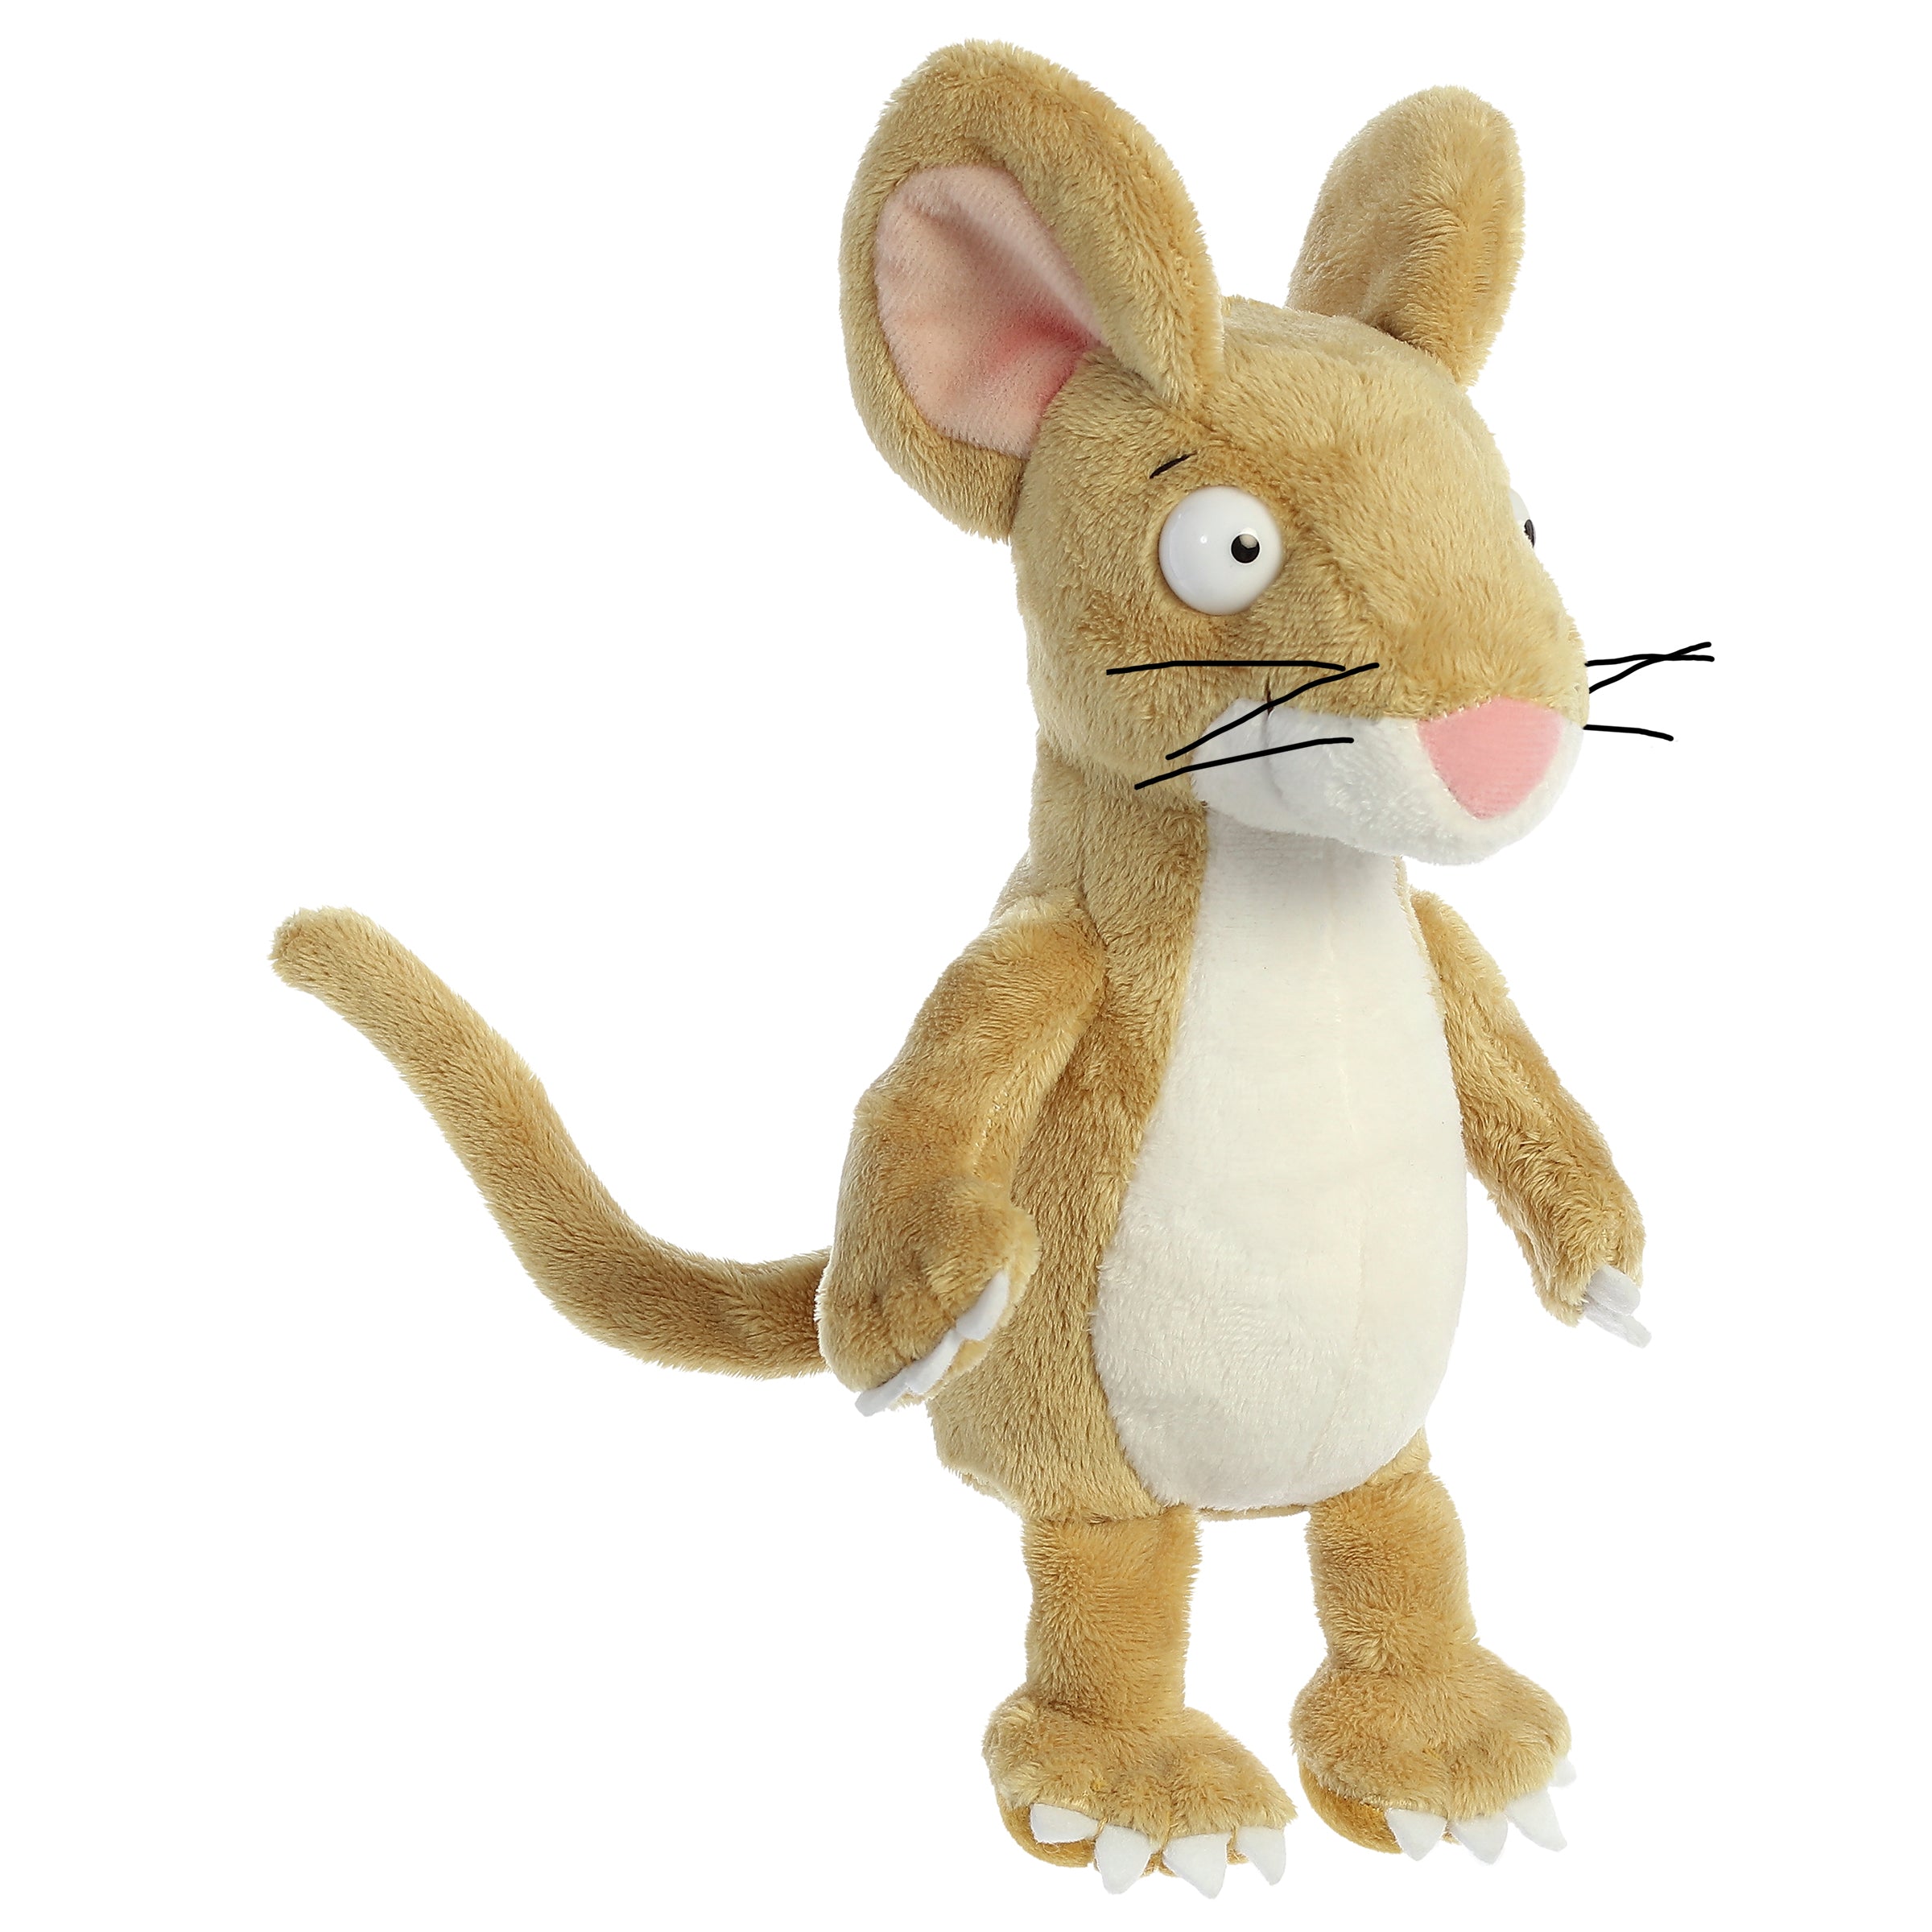 gruffalo mouse soft toy